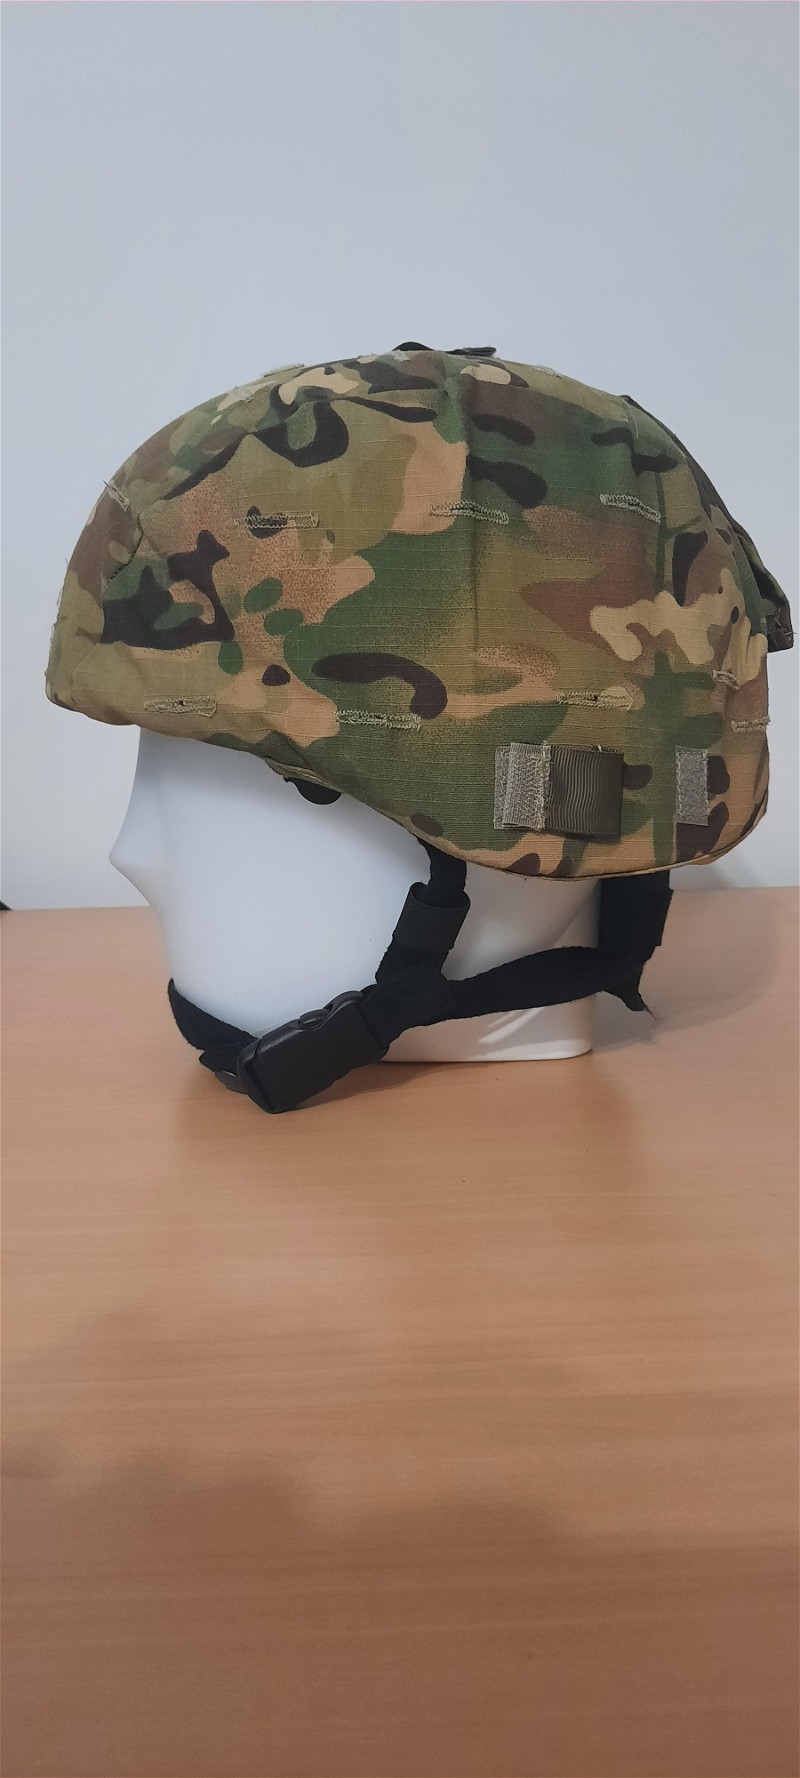 Afbeelding 1 van Replica MICH2000 helm met multicam cover